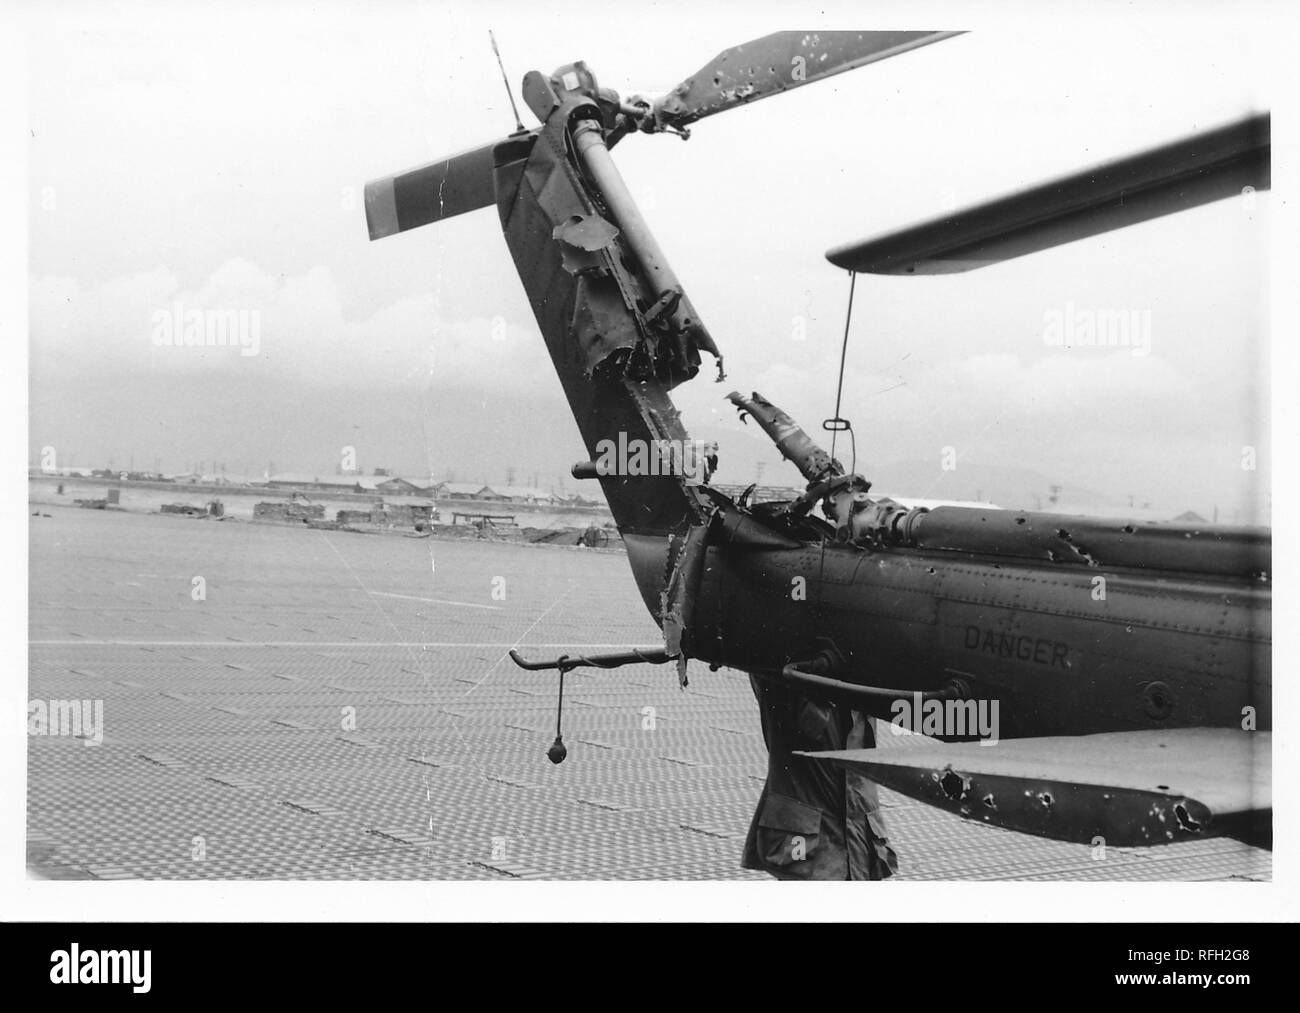 Fotografia in bianco e nero, mostrando la pesantemente danneggiata in coda di un Bell UH-1 Iroquois ("Huey") elicottero, con il tronco di un uomo che indossa una camicia militare, la cui testa è oscurata dalla Tail Boom, e casse e bunker, visibile sullo sfondo, fotografato durante la Guerra del Vietnam, 1968. () Foto Stock